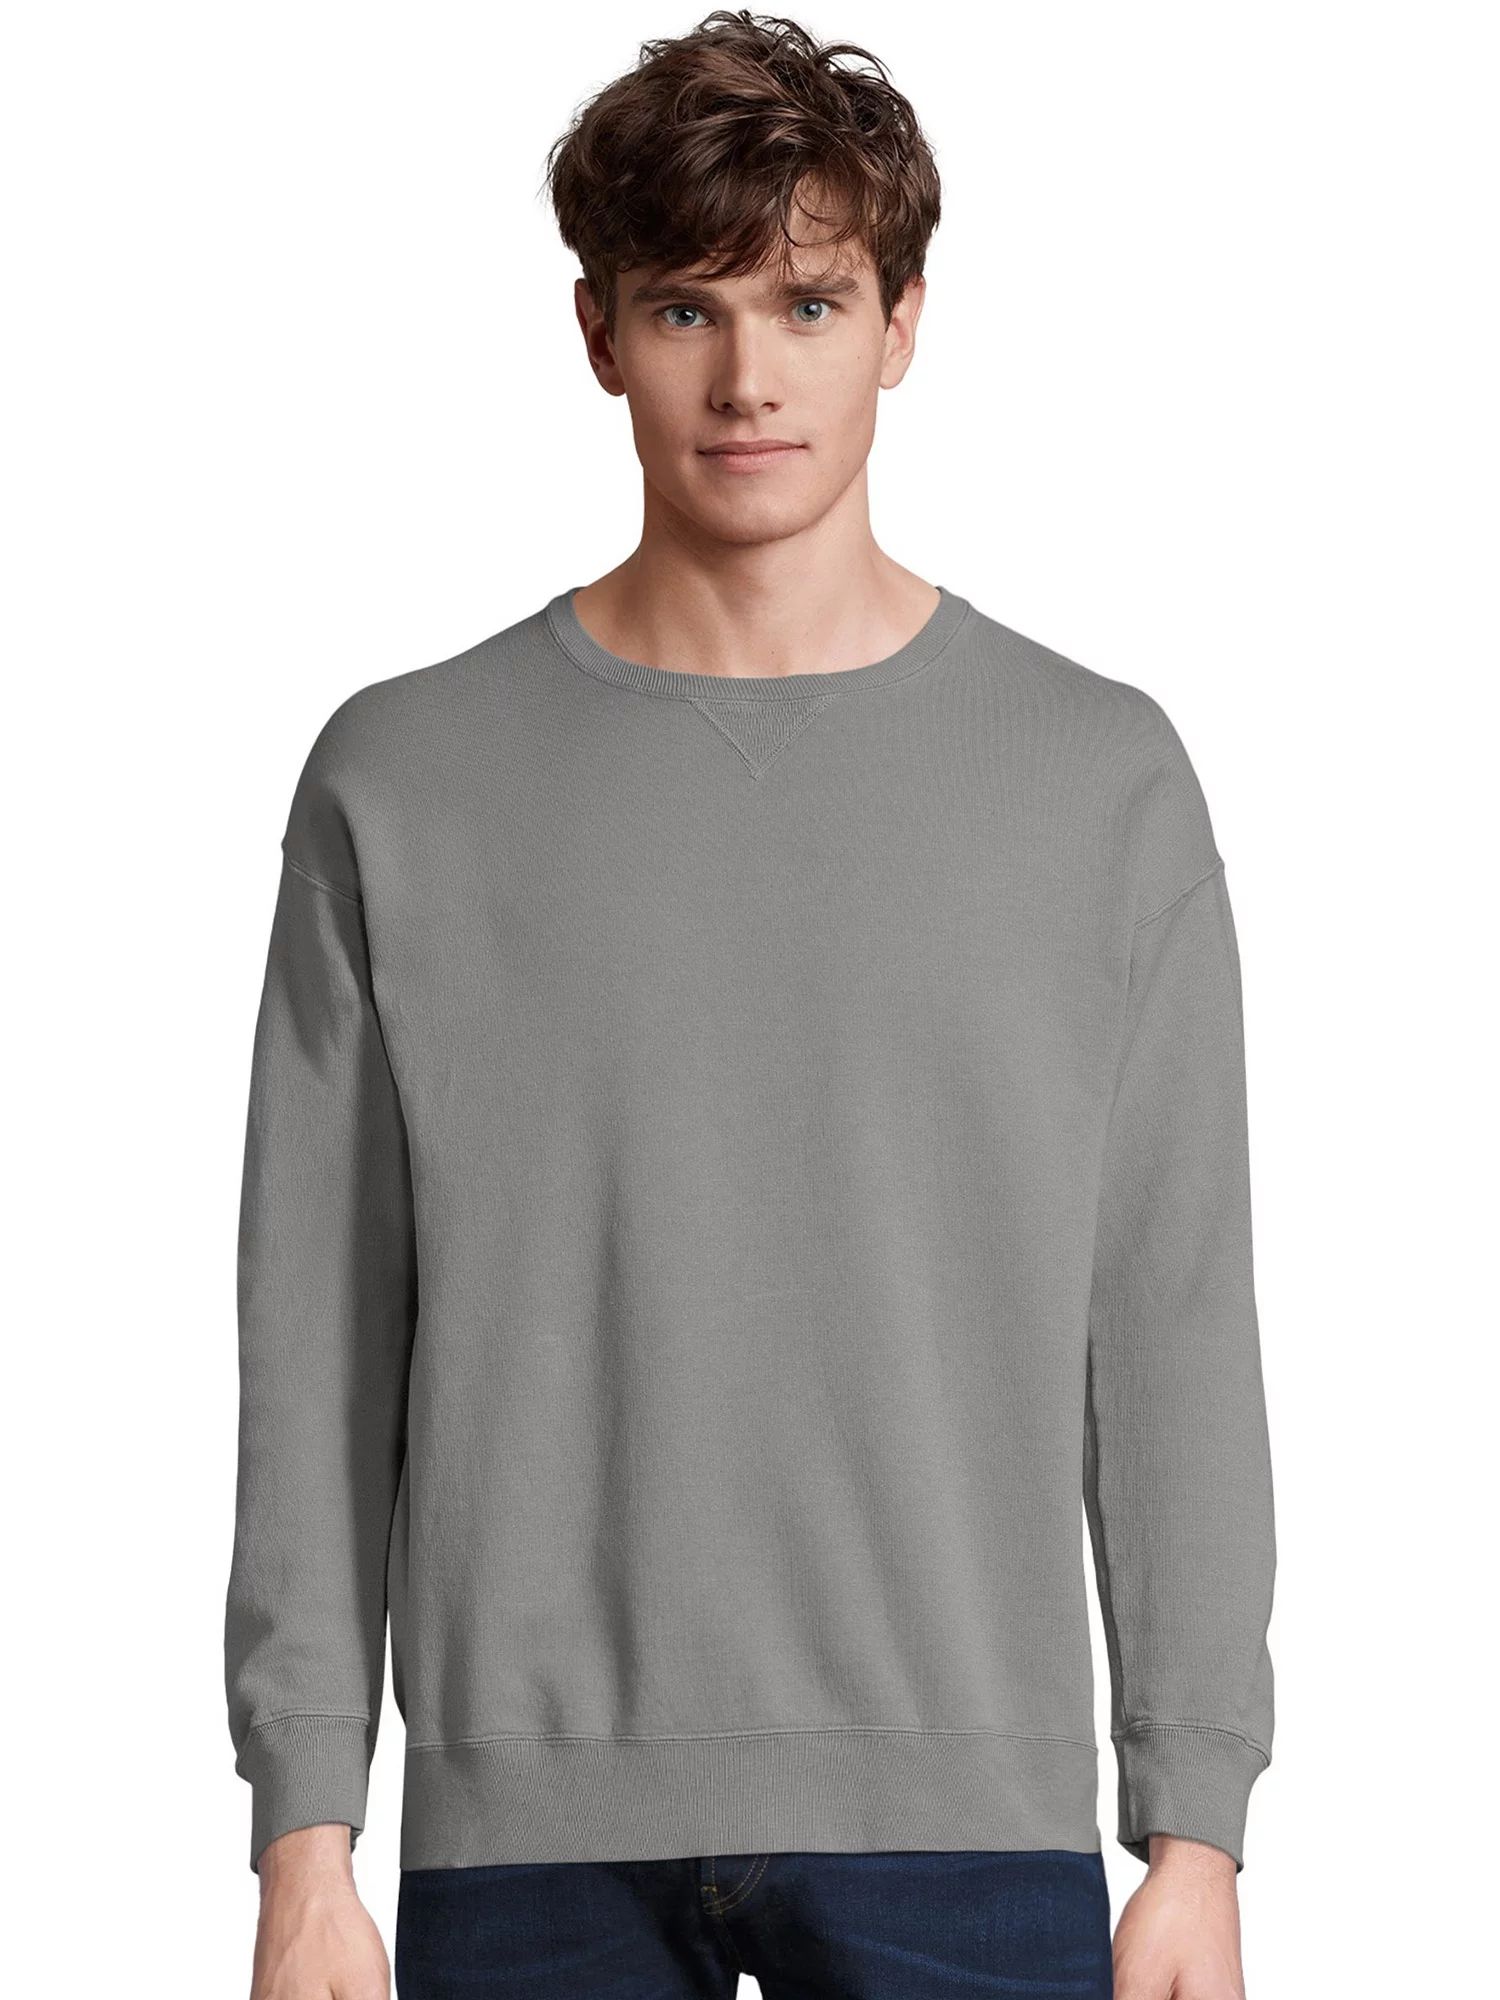 Hanes Men's ComfortWash Fleece Sweatshirt, Sizes S-3XL | Walmart (US)